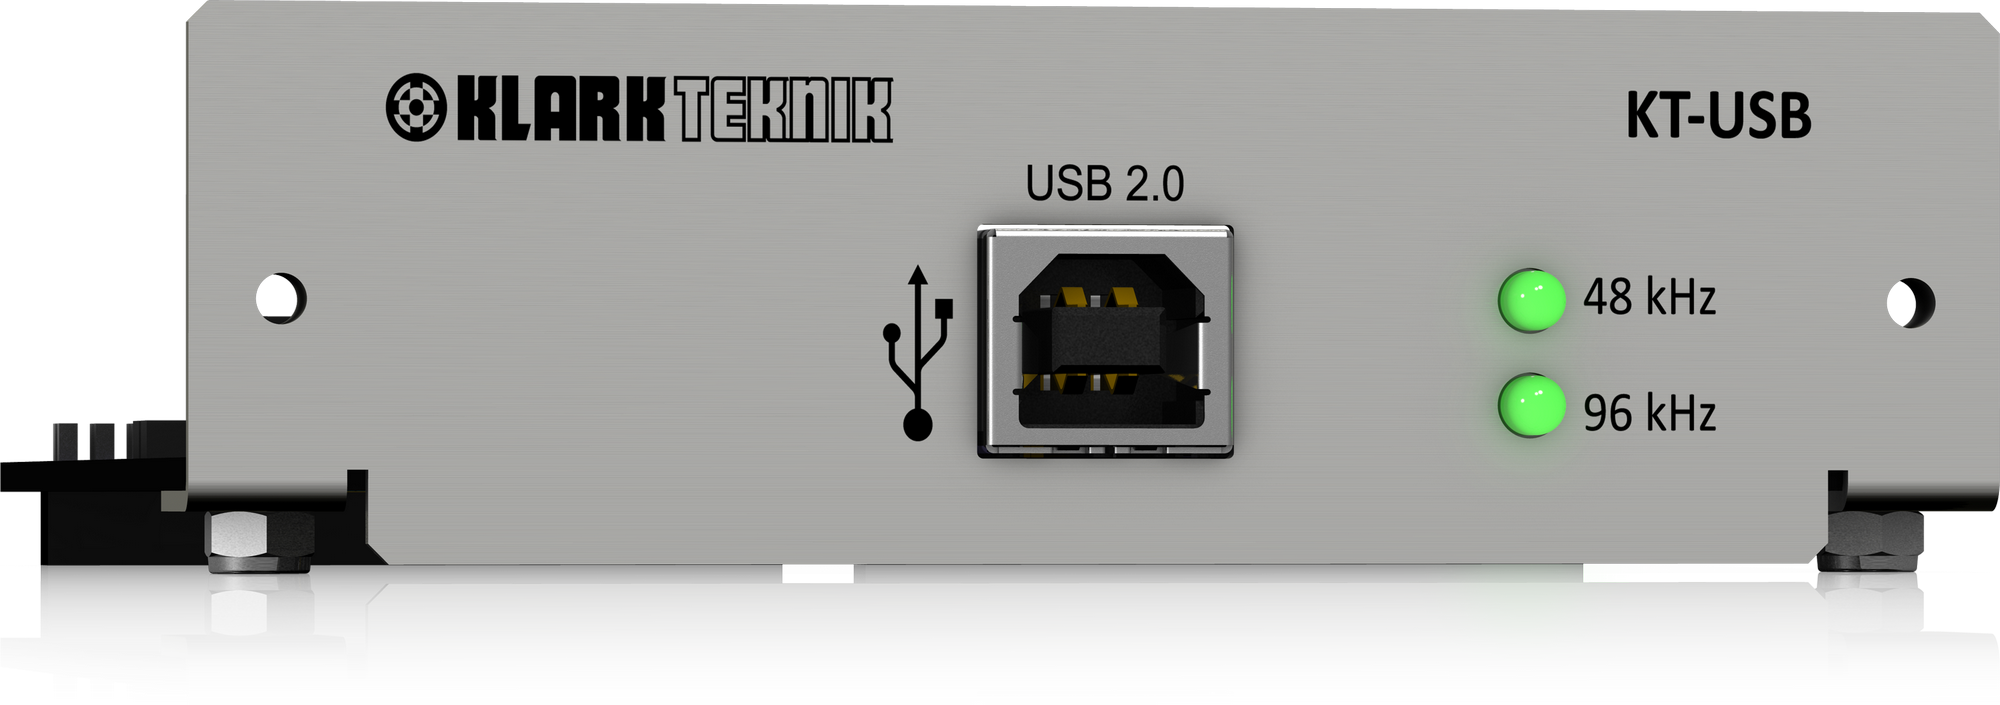 KT-USB